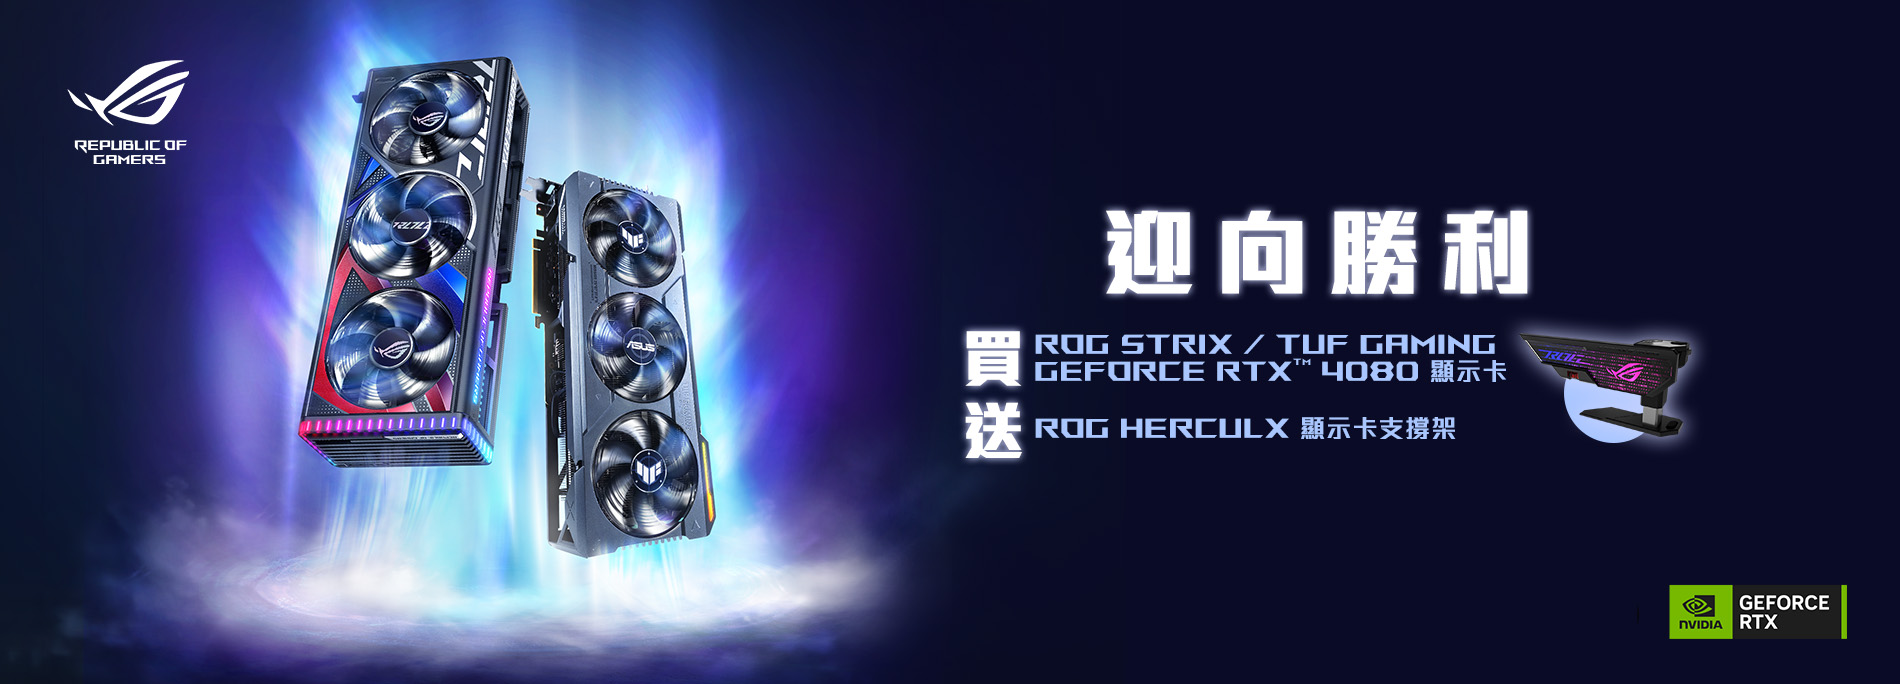 【迎向勝利】活動期間購買 ROG / TUF Gaming GeForce RTX 4080 顯示卡，官網登錄送『ROG Herculx 顯示卡支撐架 』(數量有限，送完為止)